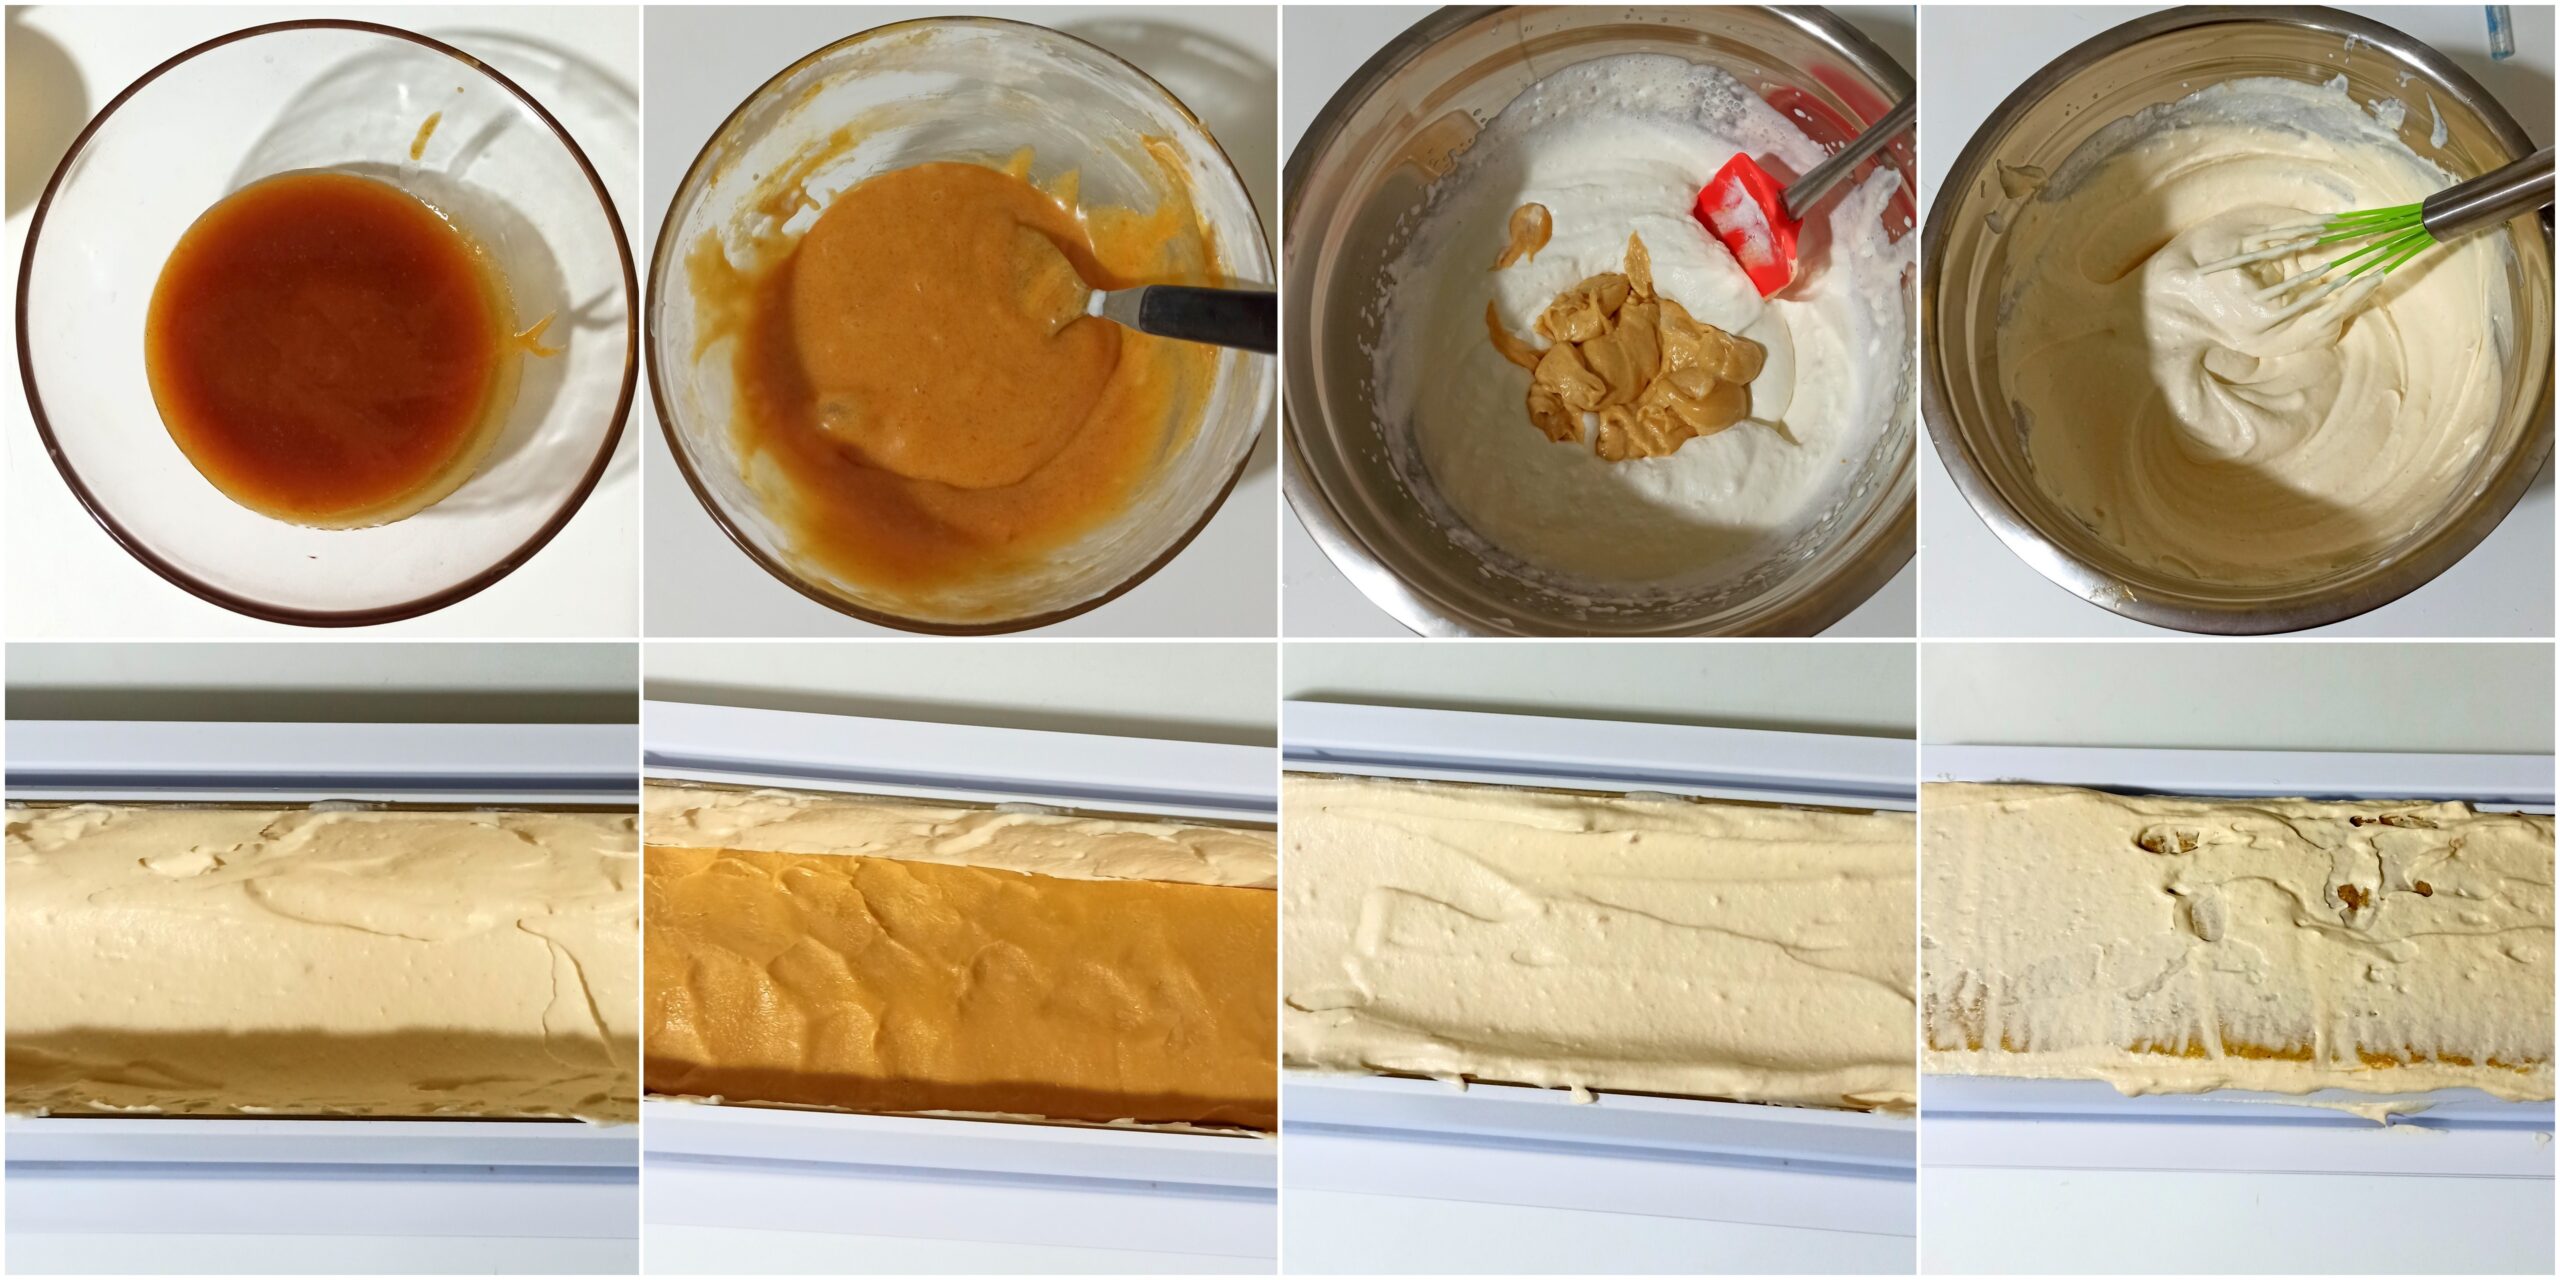 Bûche vanille et caramel sans gluten - La Cassata Celiaca